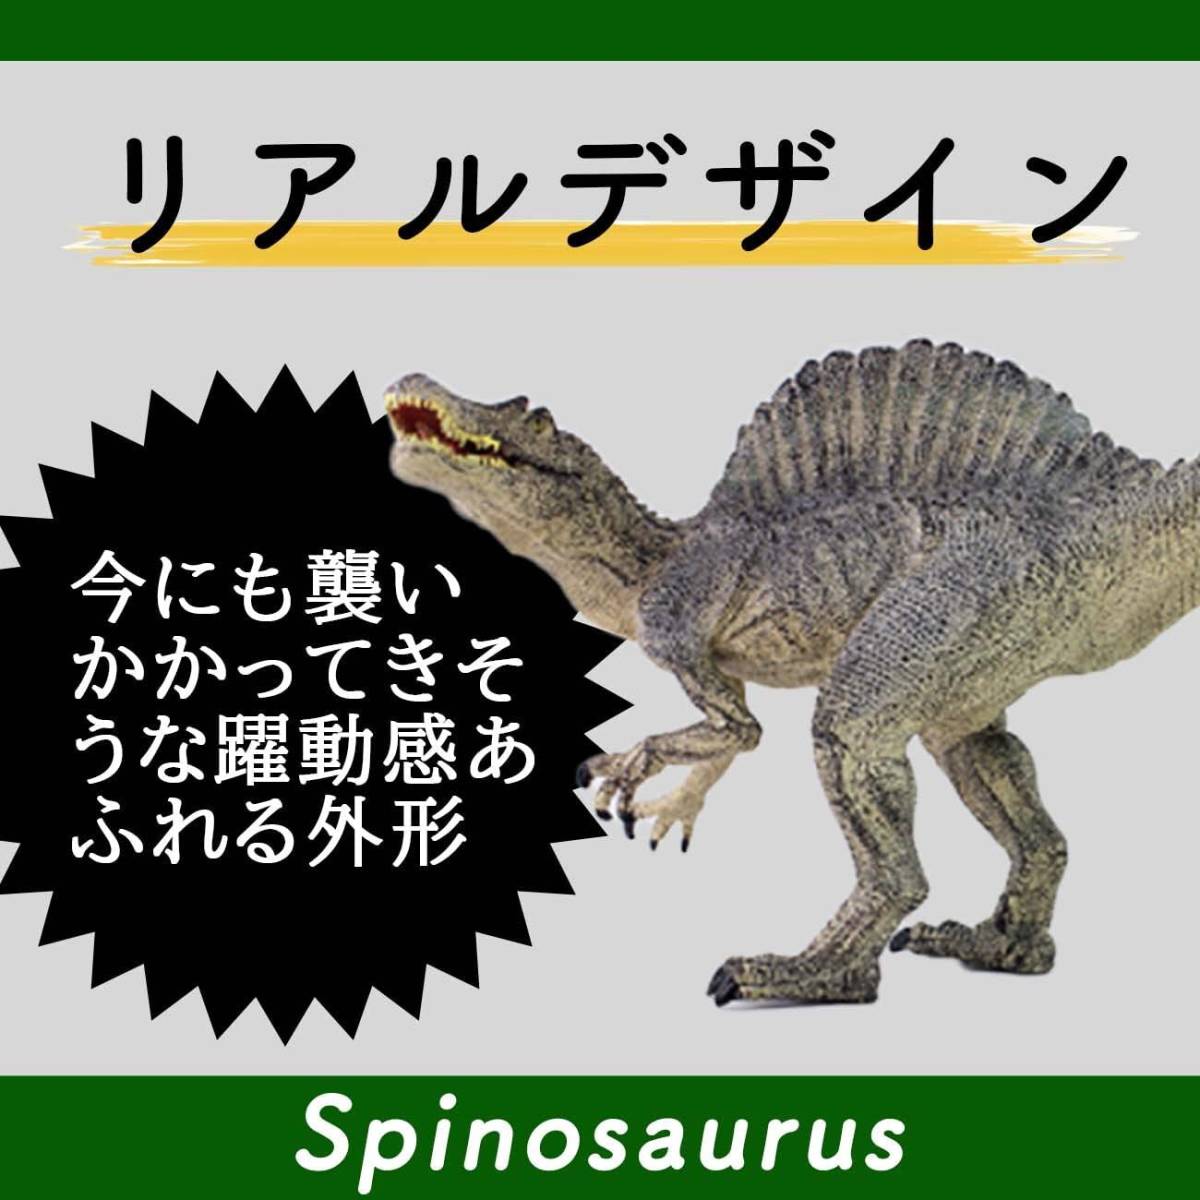 超リアル スピノサウルス 恐竜 フィギュア リアル 模型 ジュラ紀 30㎝級 爬虫類 迫力 肉食 子供玩具 プレゼント 恐竜おもちゃ ごっこ遊び